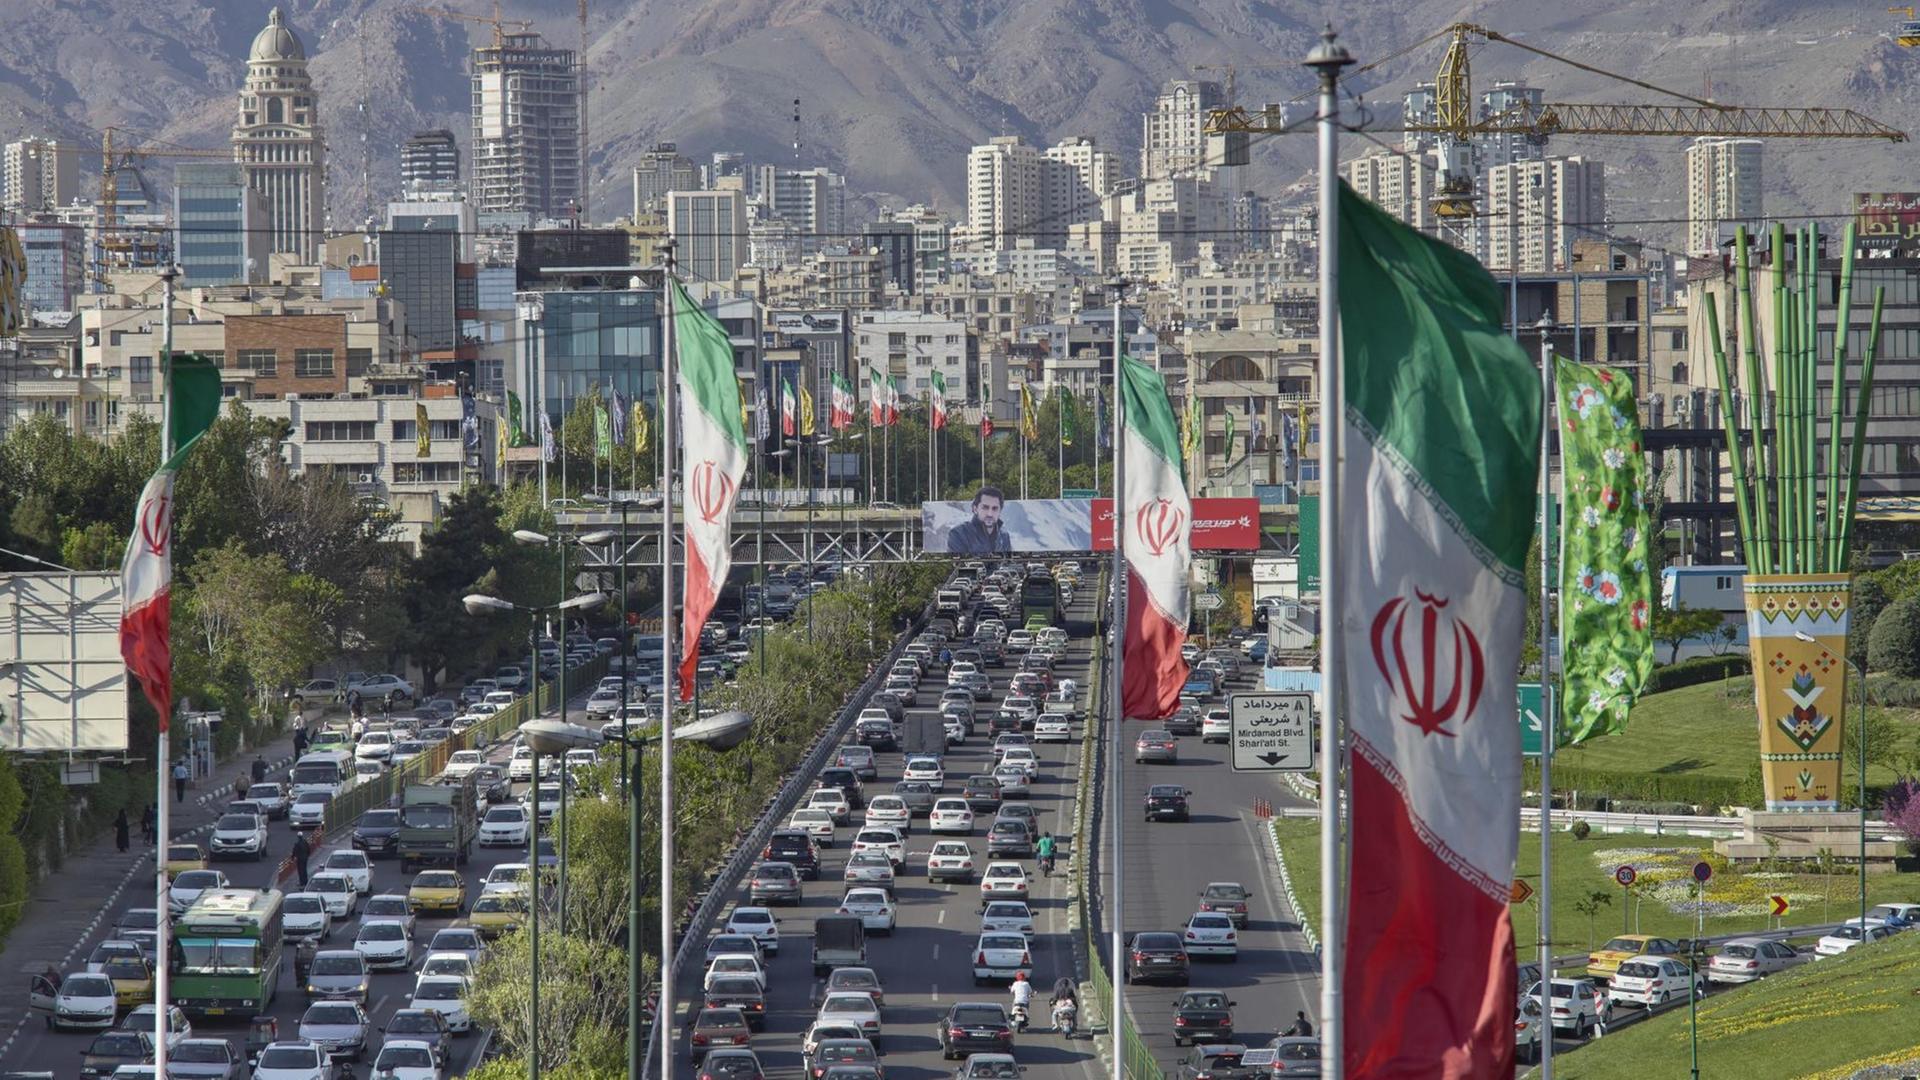 Teheran im Iran: Blick auf die Stadt vor dem Elburs-Gebirge